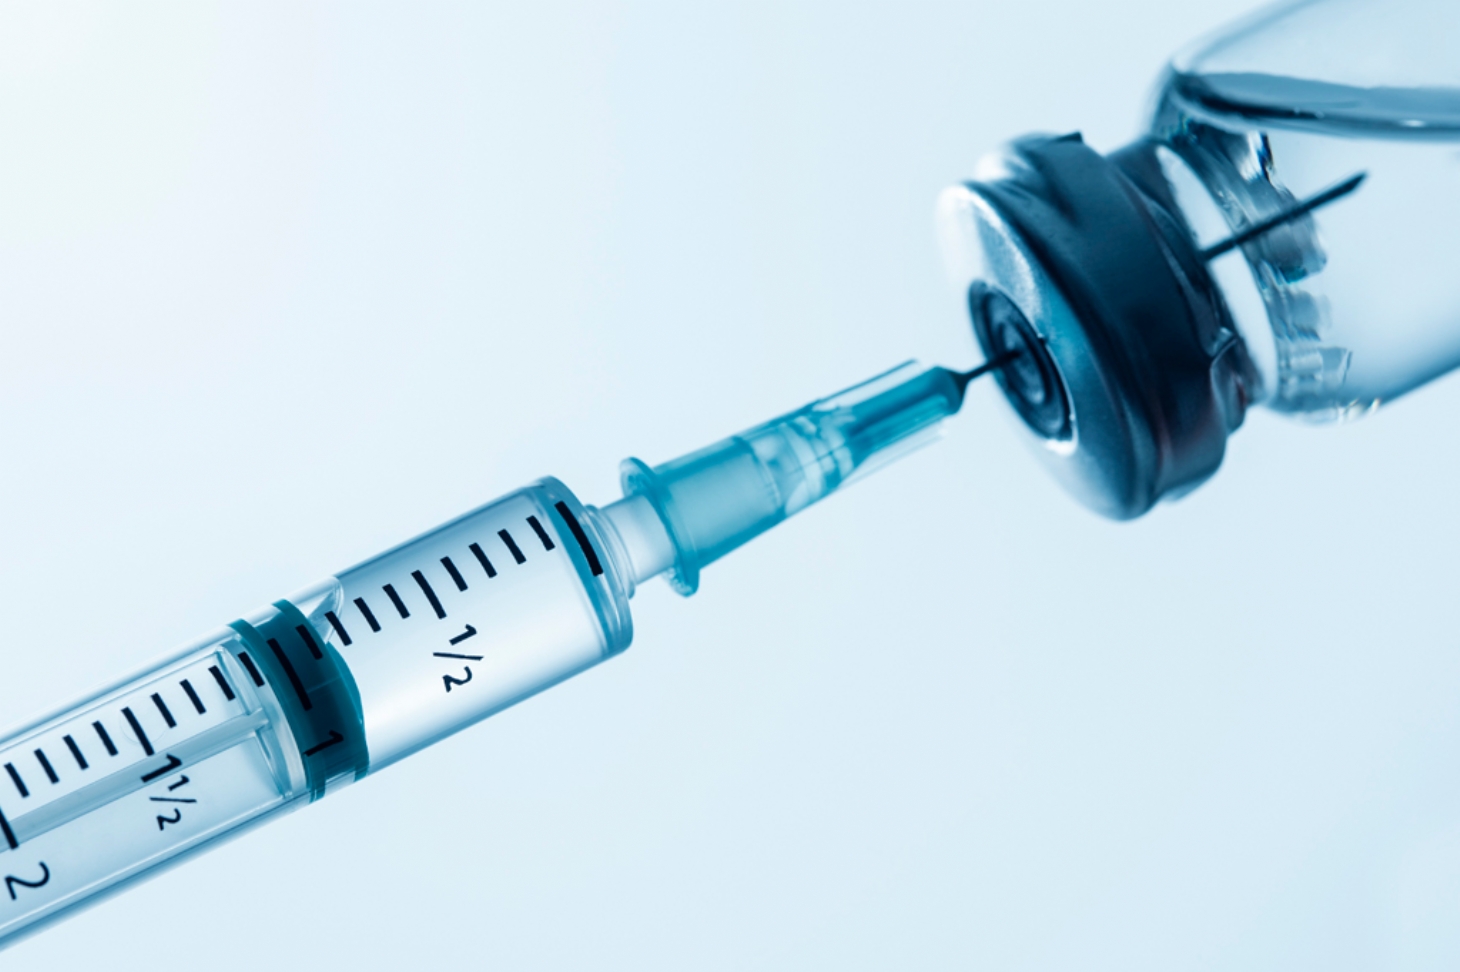 Covid-19: MS concluirá plano de vacinação após registro de imunizantes | Jornal da Orla